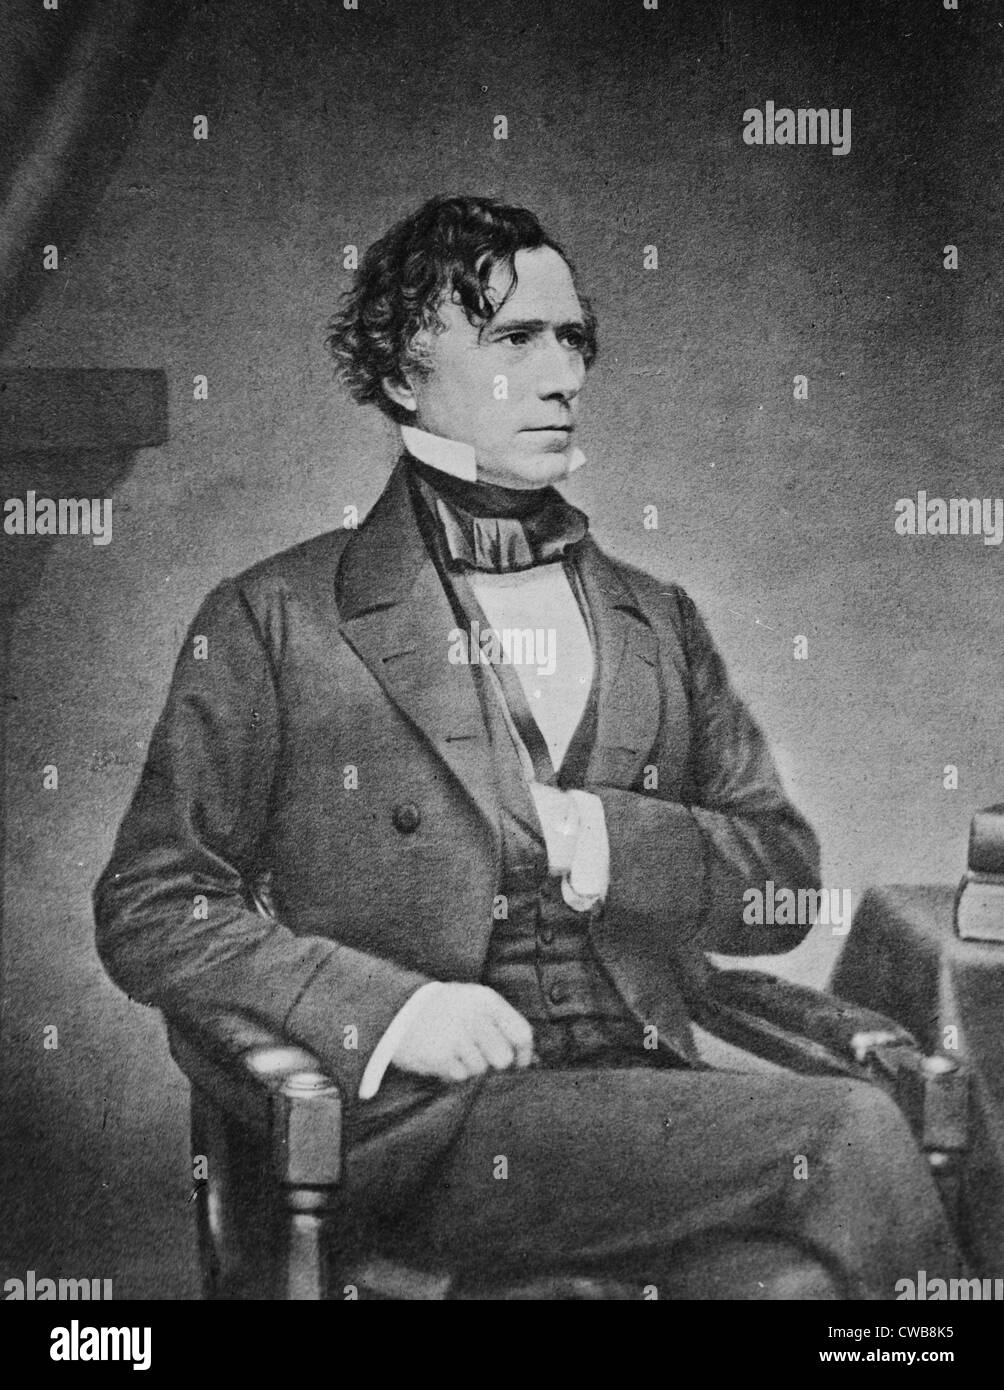 President Franklin Pierce.  by Matthew Brady, 1850s. Stock Photo